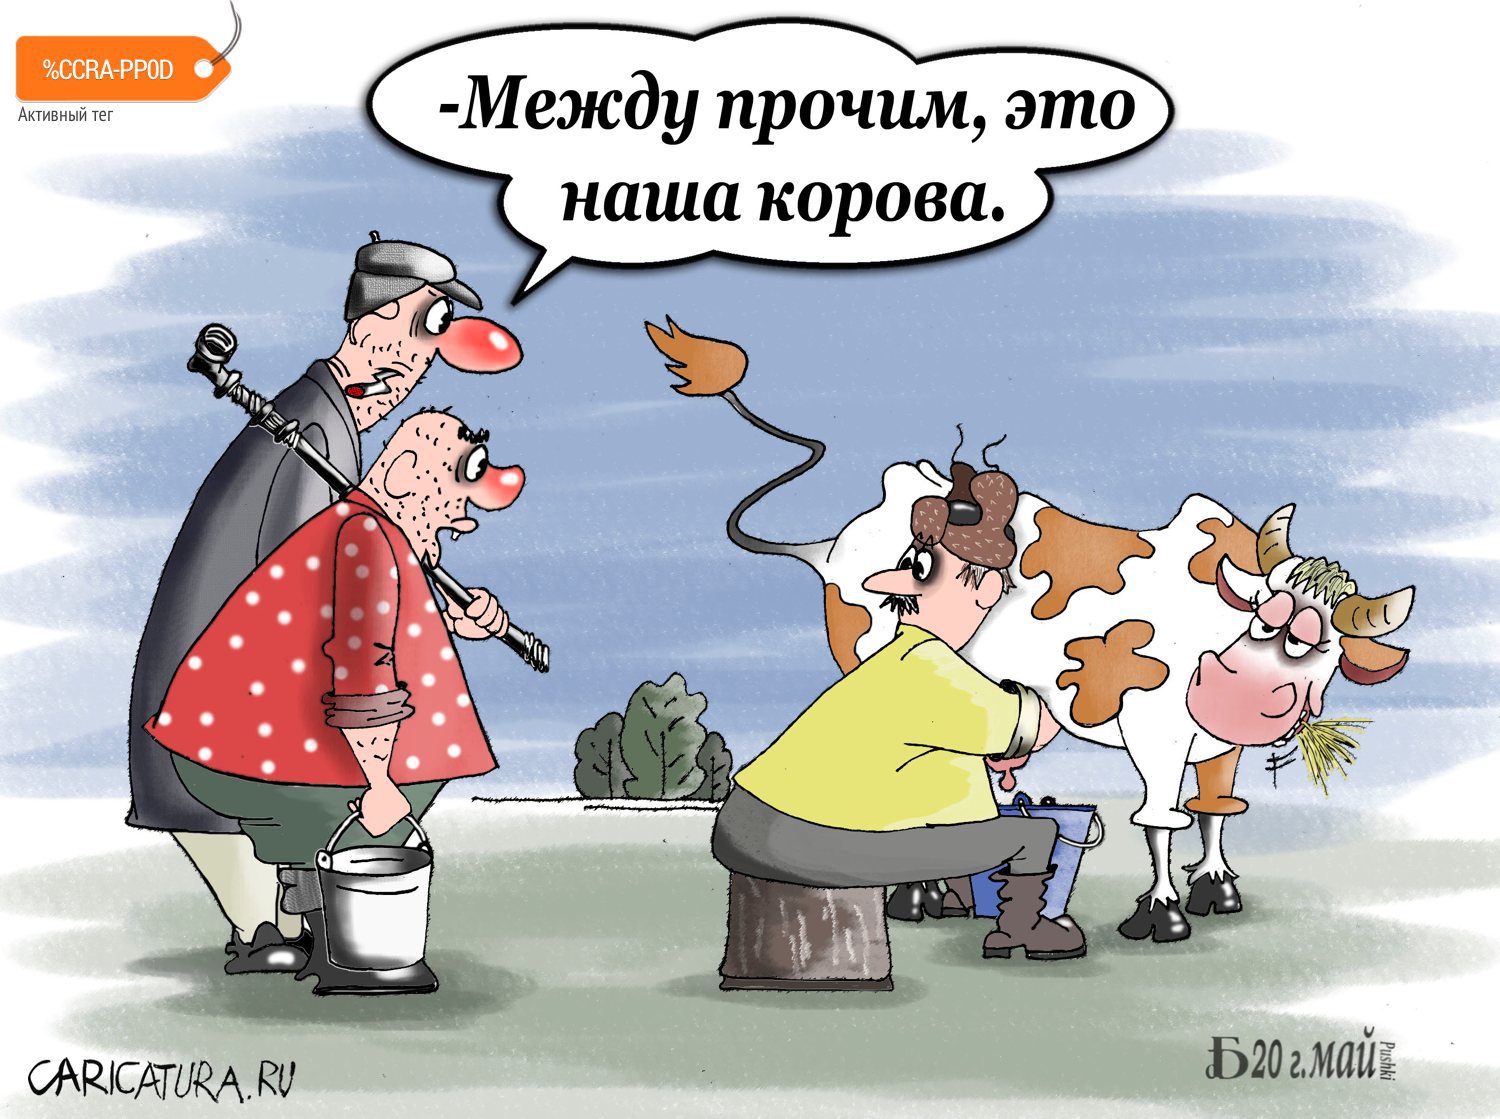 Карикатура "Про сельский ренессанс", Борис Демин